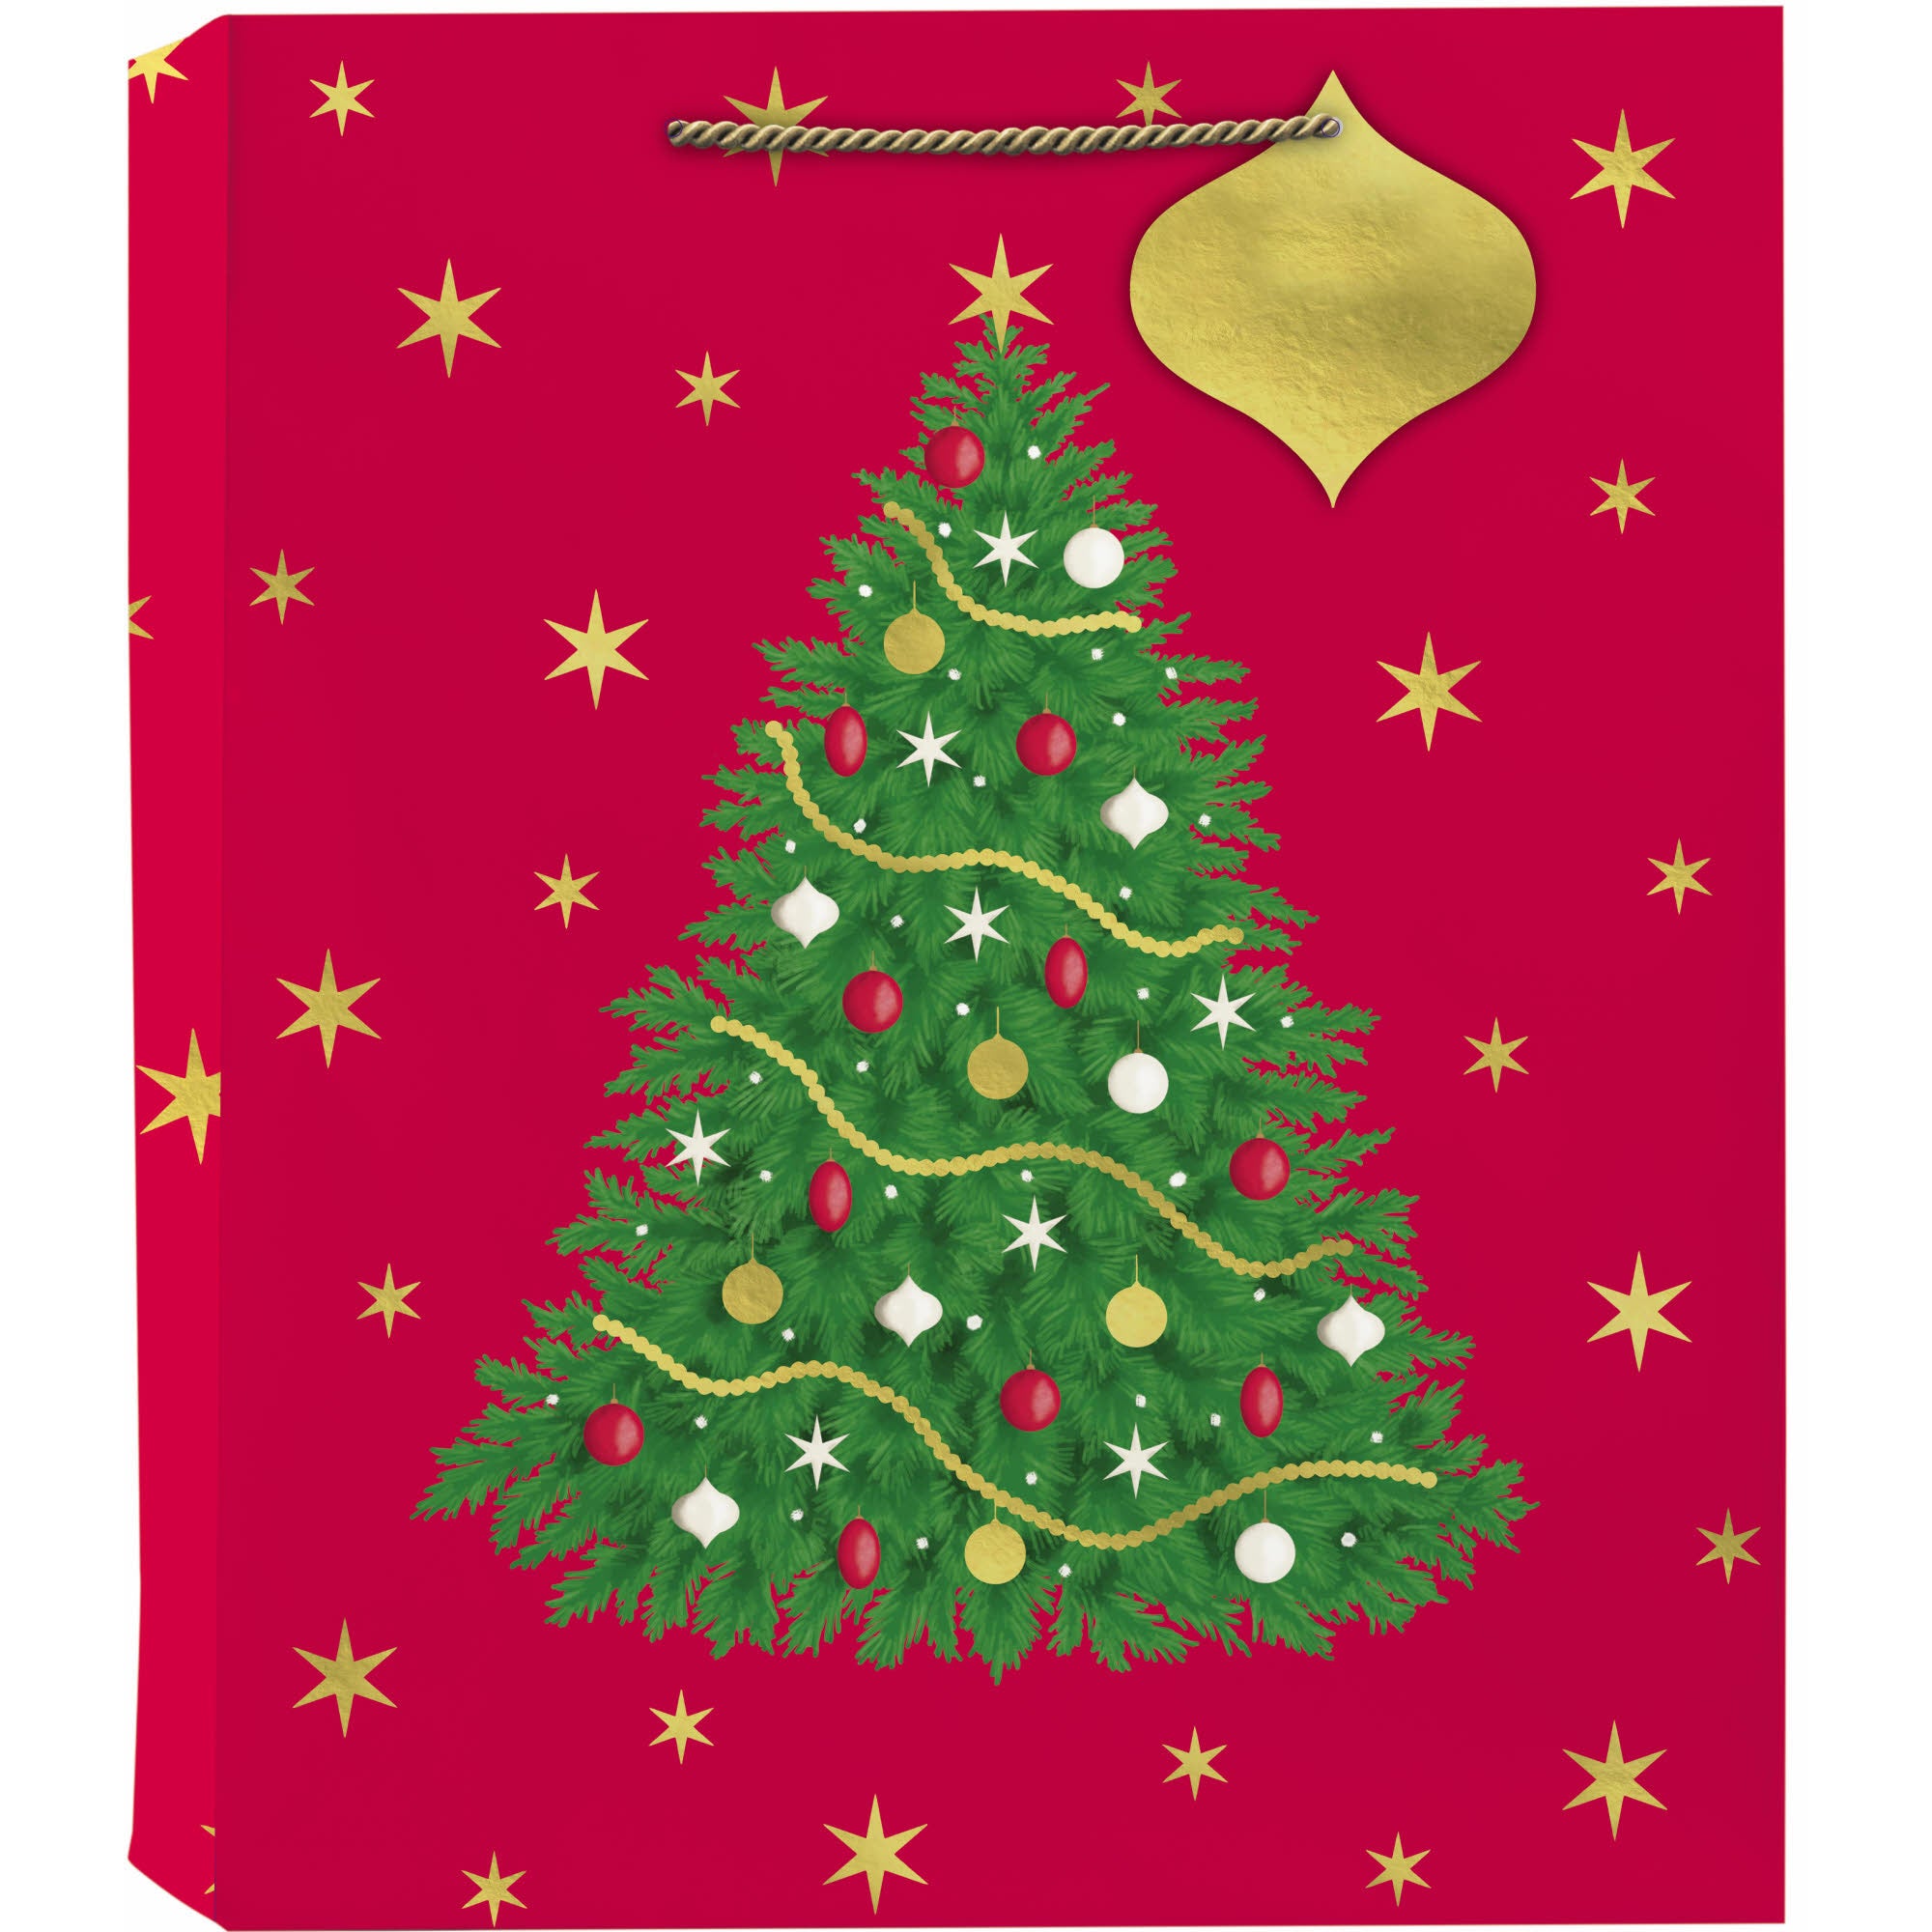 Design Design Tote Gift Bag - Holiday Splendor - Large